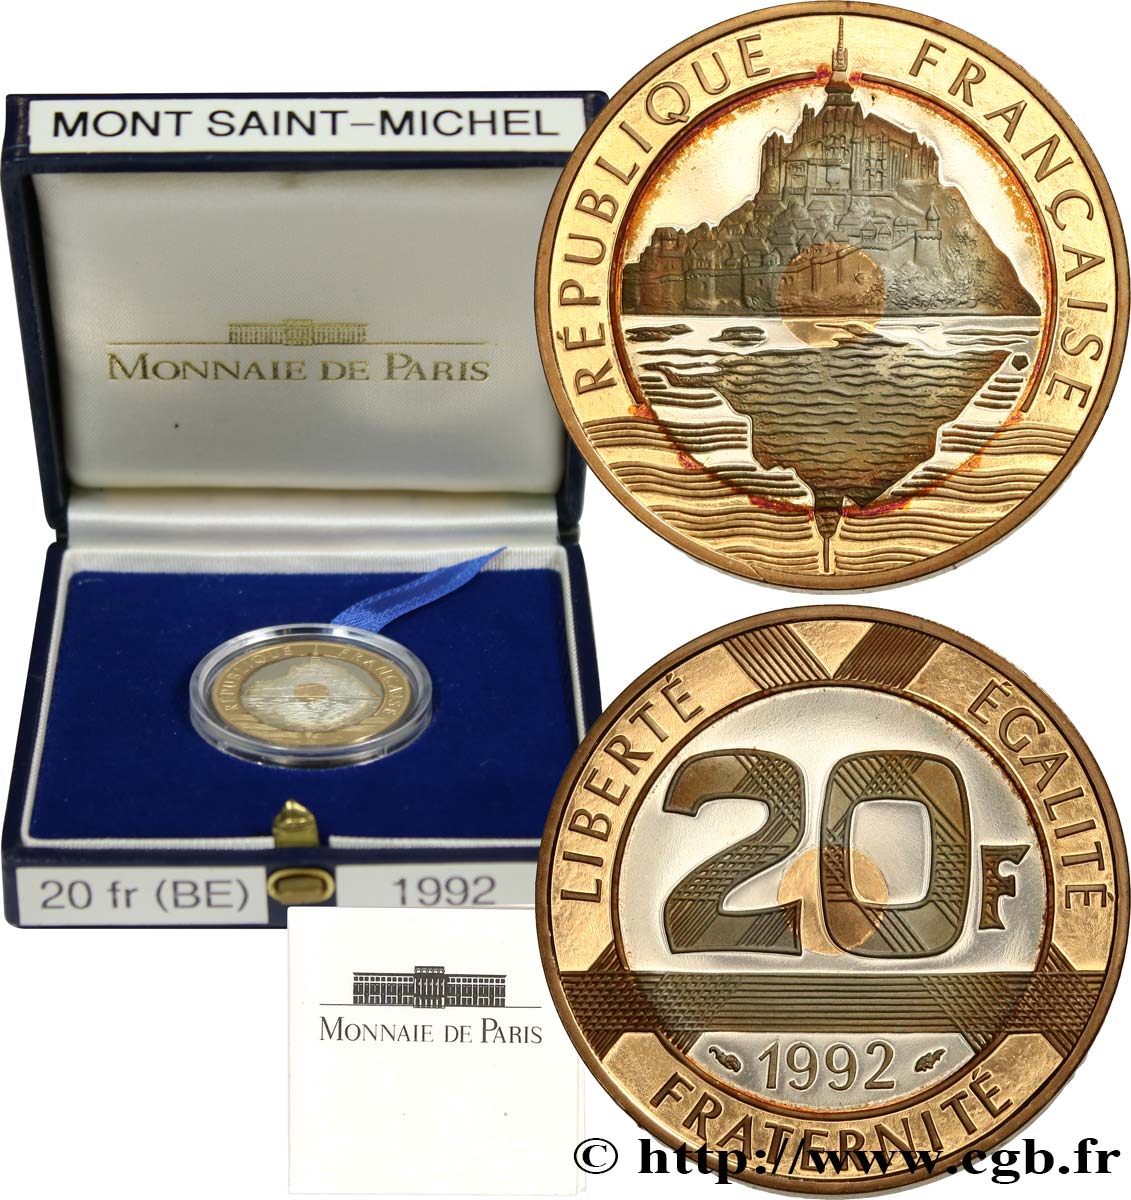 Belle Épreuve Or/Argent 20 francs - Mont Saint-Michel 1992 Pessac F5.1400 2 FDC 